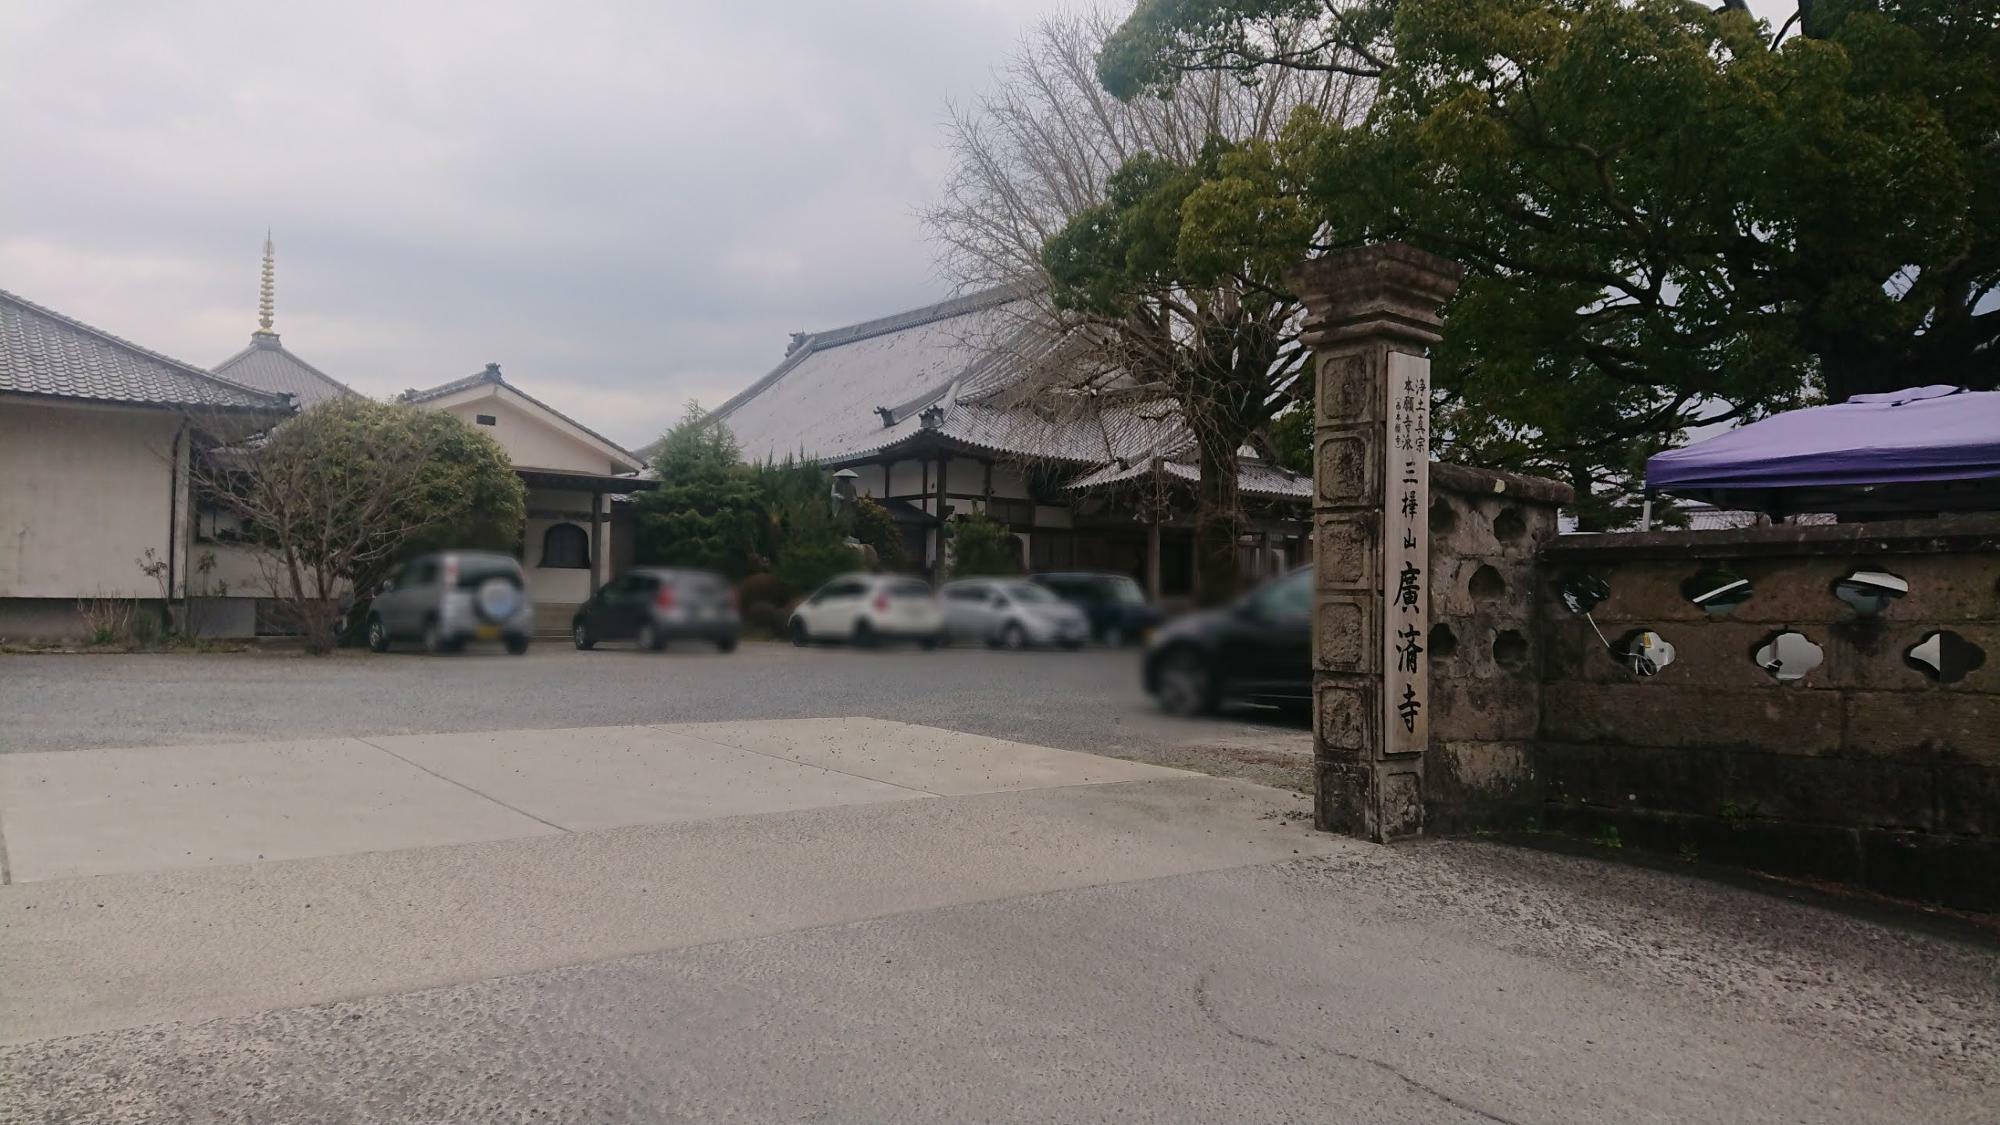 廣済寺はJR三股駅の近くある古く大きなお寺